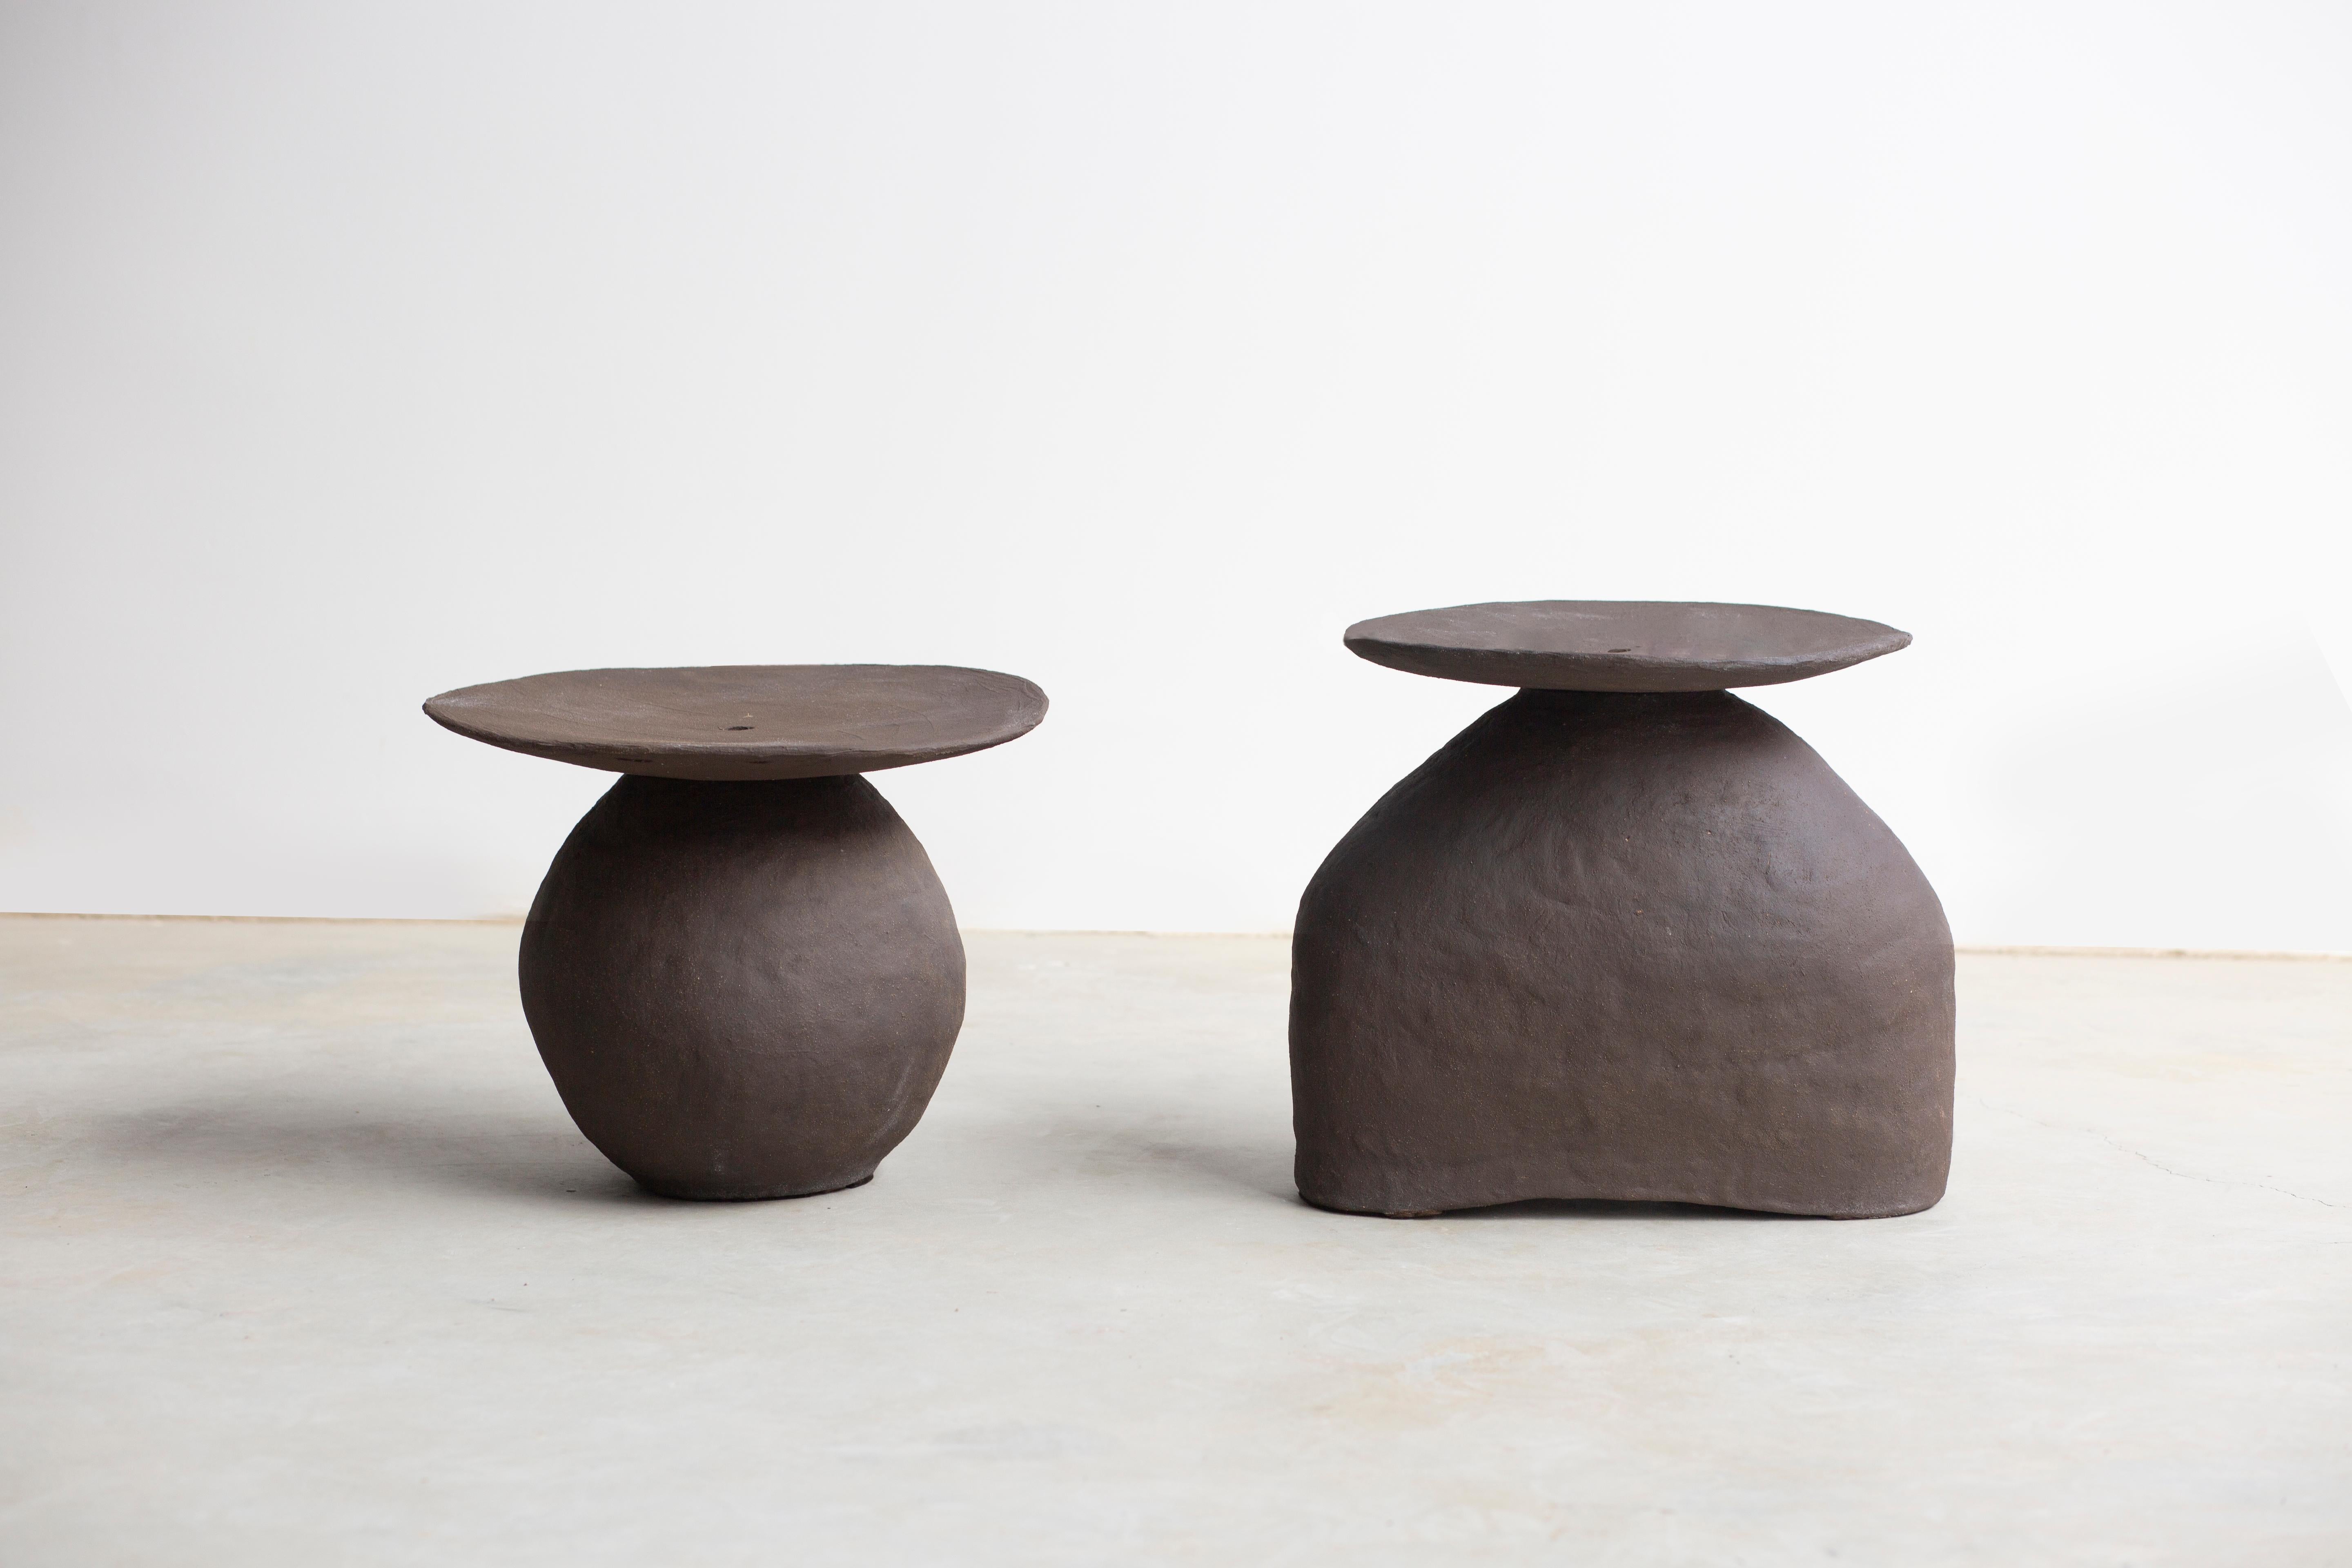 Set Of 2 Senex Low Tables by Isin Sezgi Avci
Unique Pieces.
Dimensions: Table 1: D 36 x W 46 x H 40 cm.
Table 2: D 35 x W 45 x H 32 cm.
Materials: Hand-built ceramic.

The Senex low table is a set of two pieces of ceramic sculptural furniture. Senex